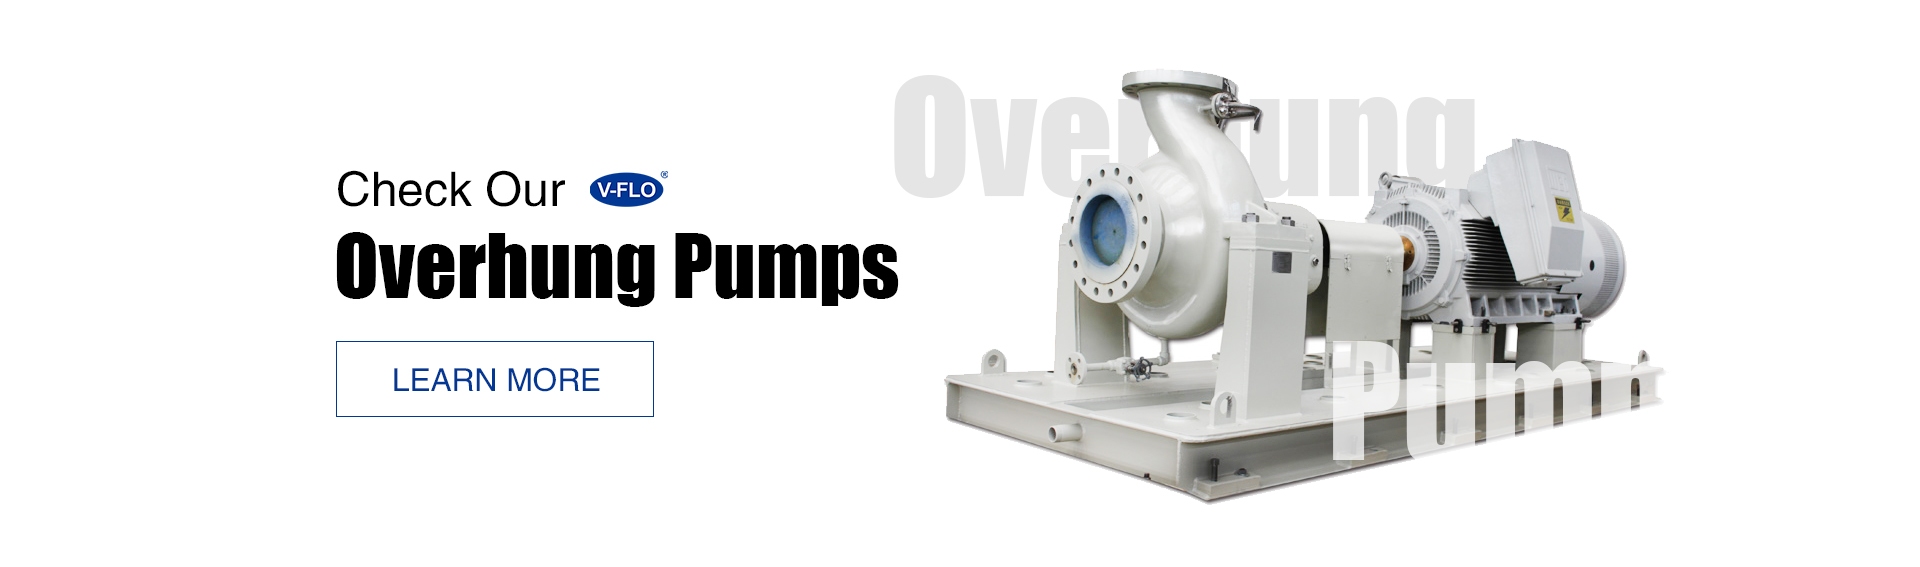 overhung pumps